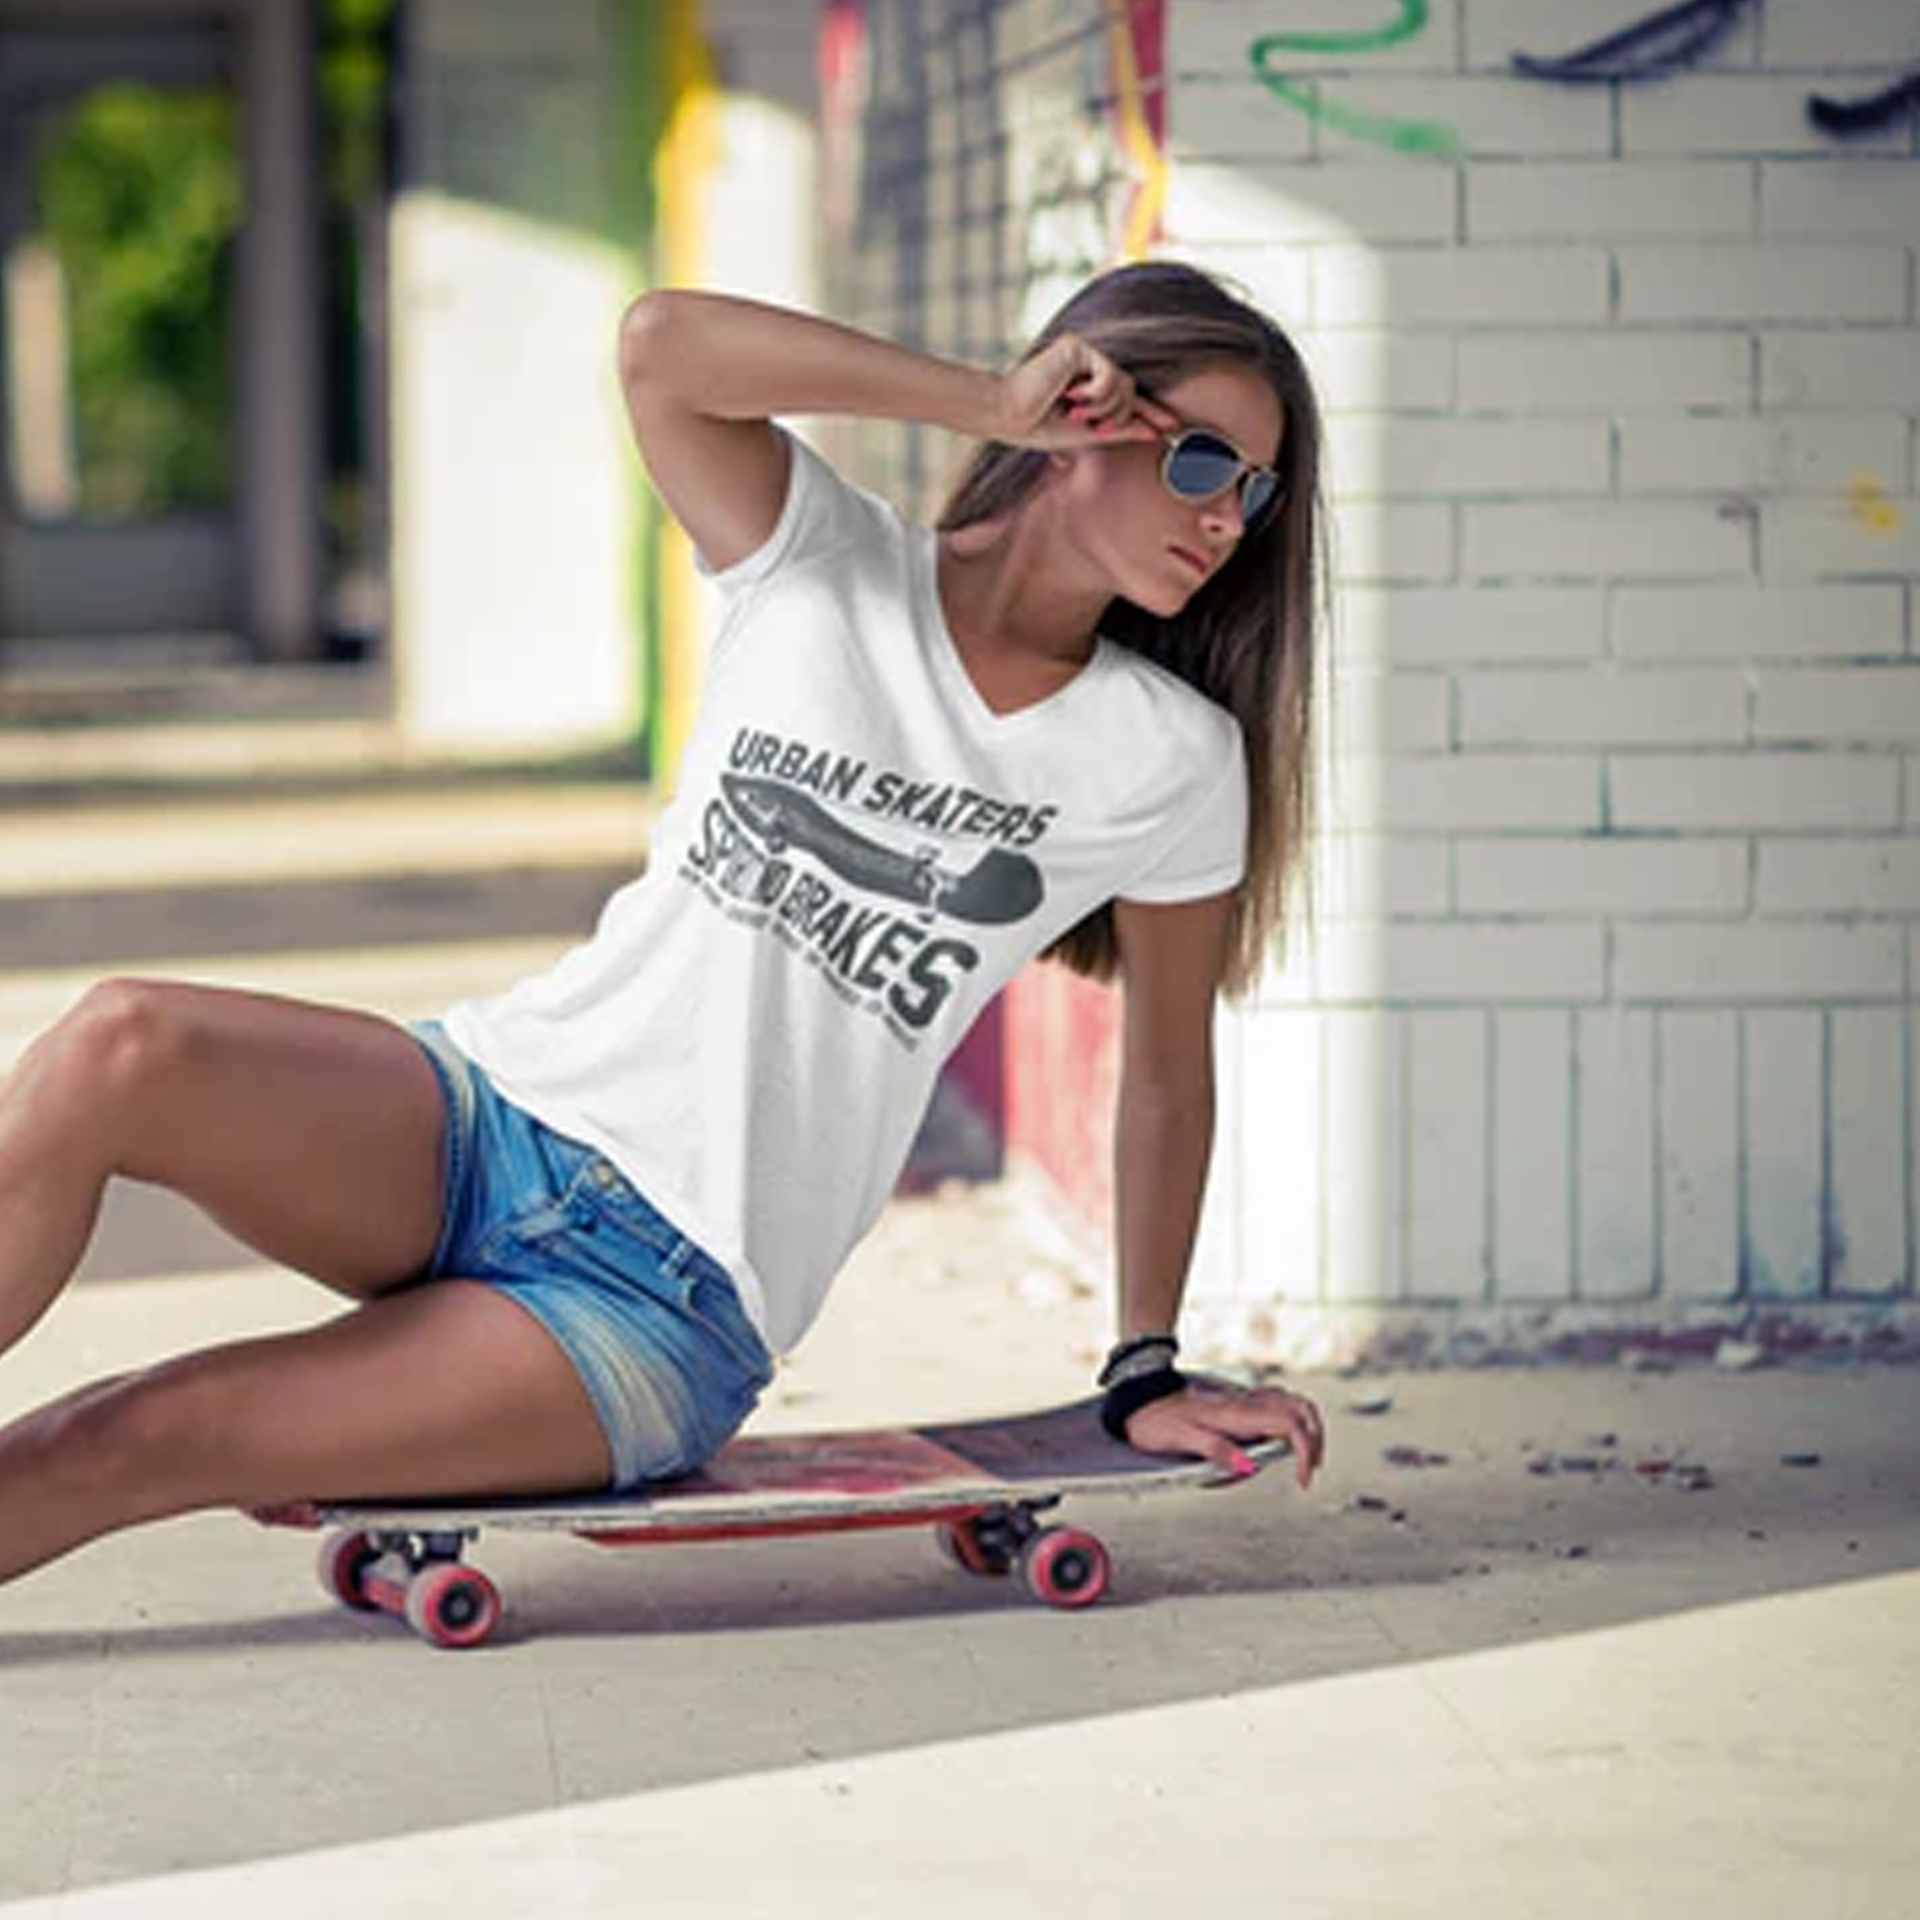 Urban Skater Girl